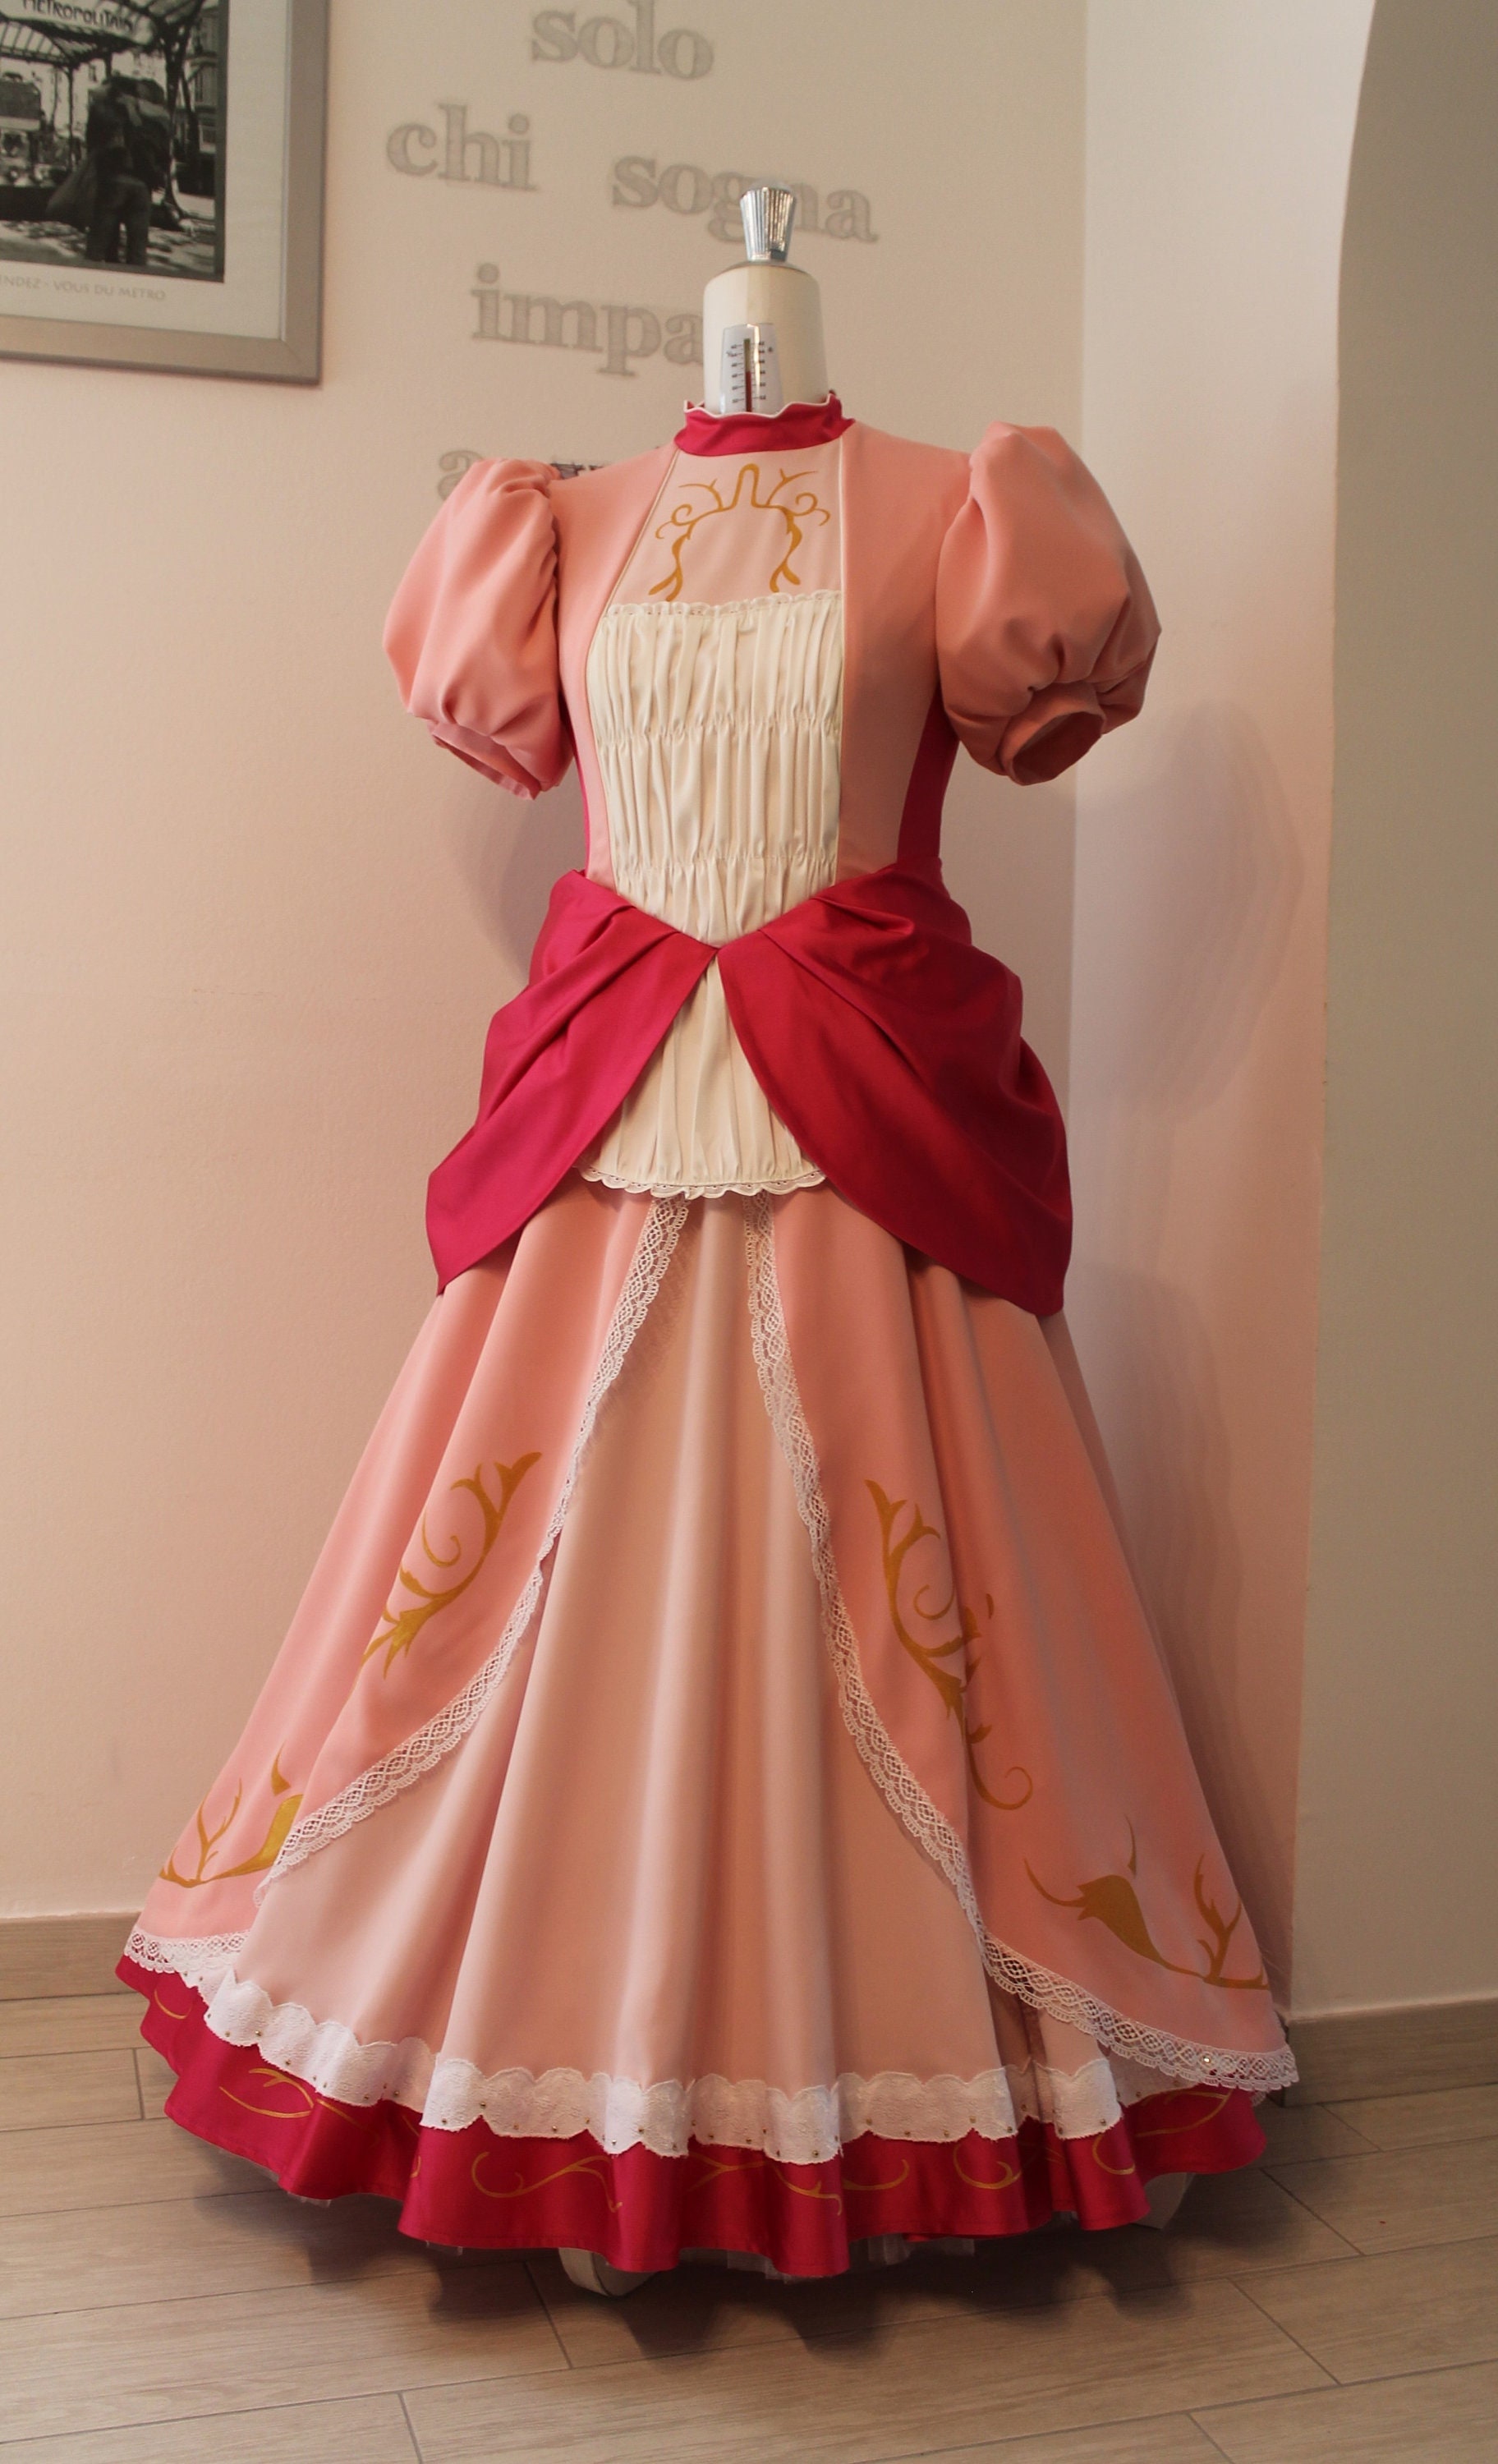 Costume principessa peach originale Super mario adulta lunga